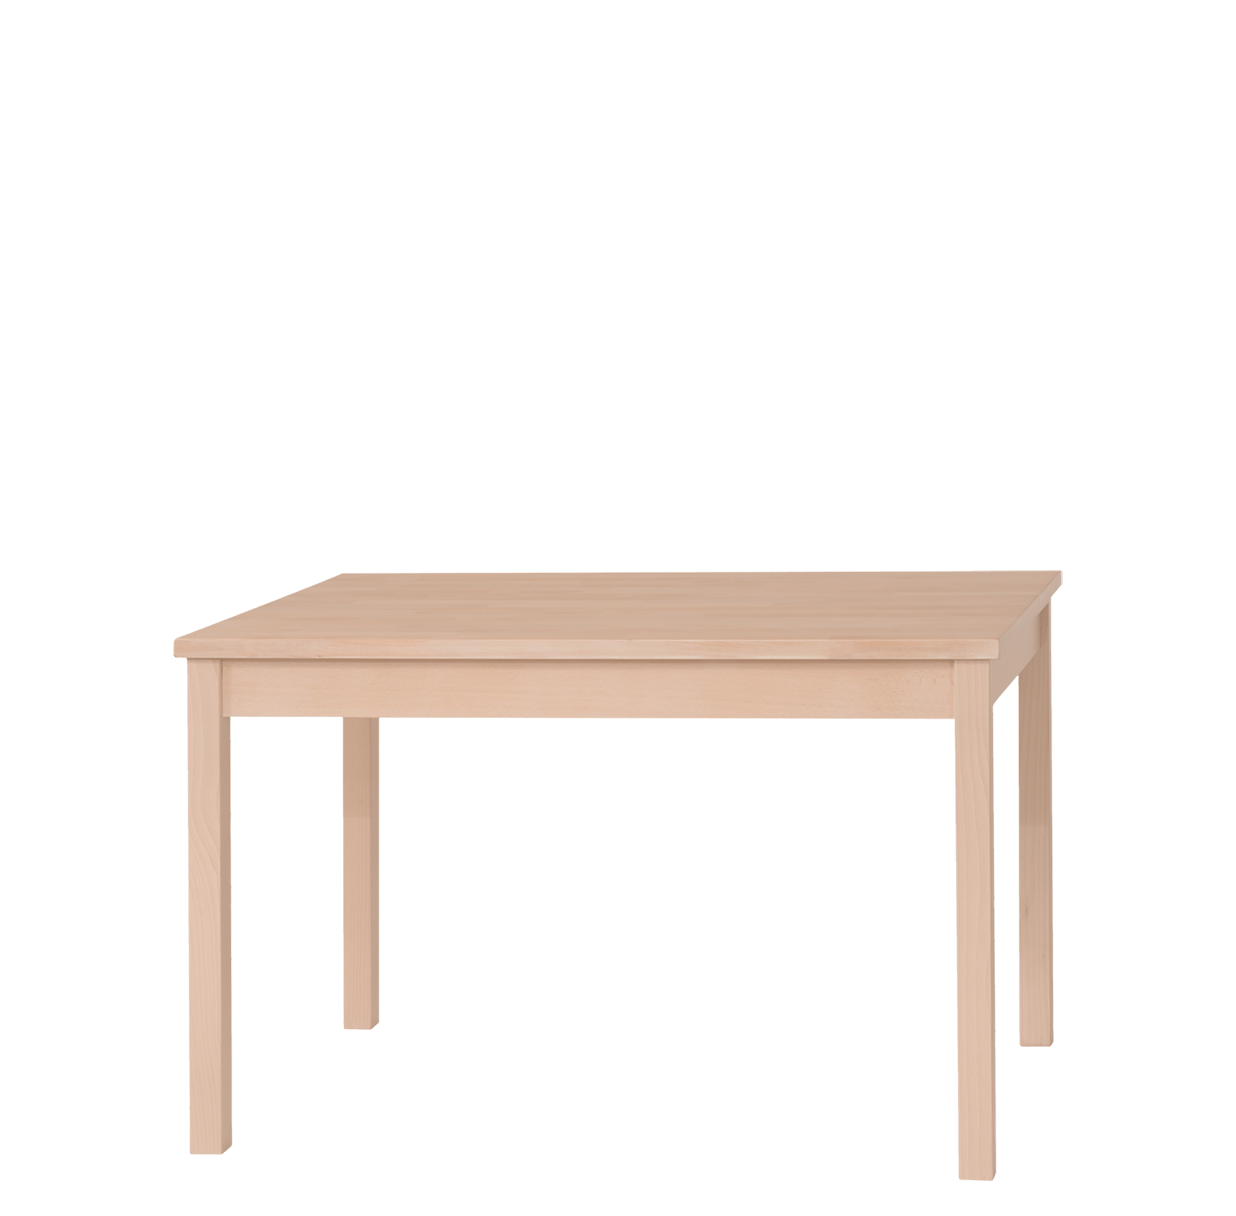 Masivní bukový stůl Kasparov, tradiční český výrobce nábytku Sádlík